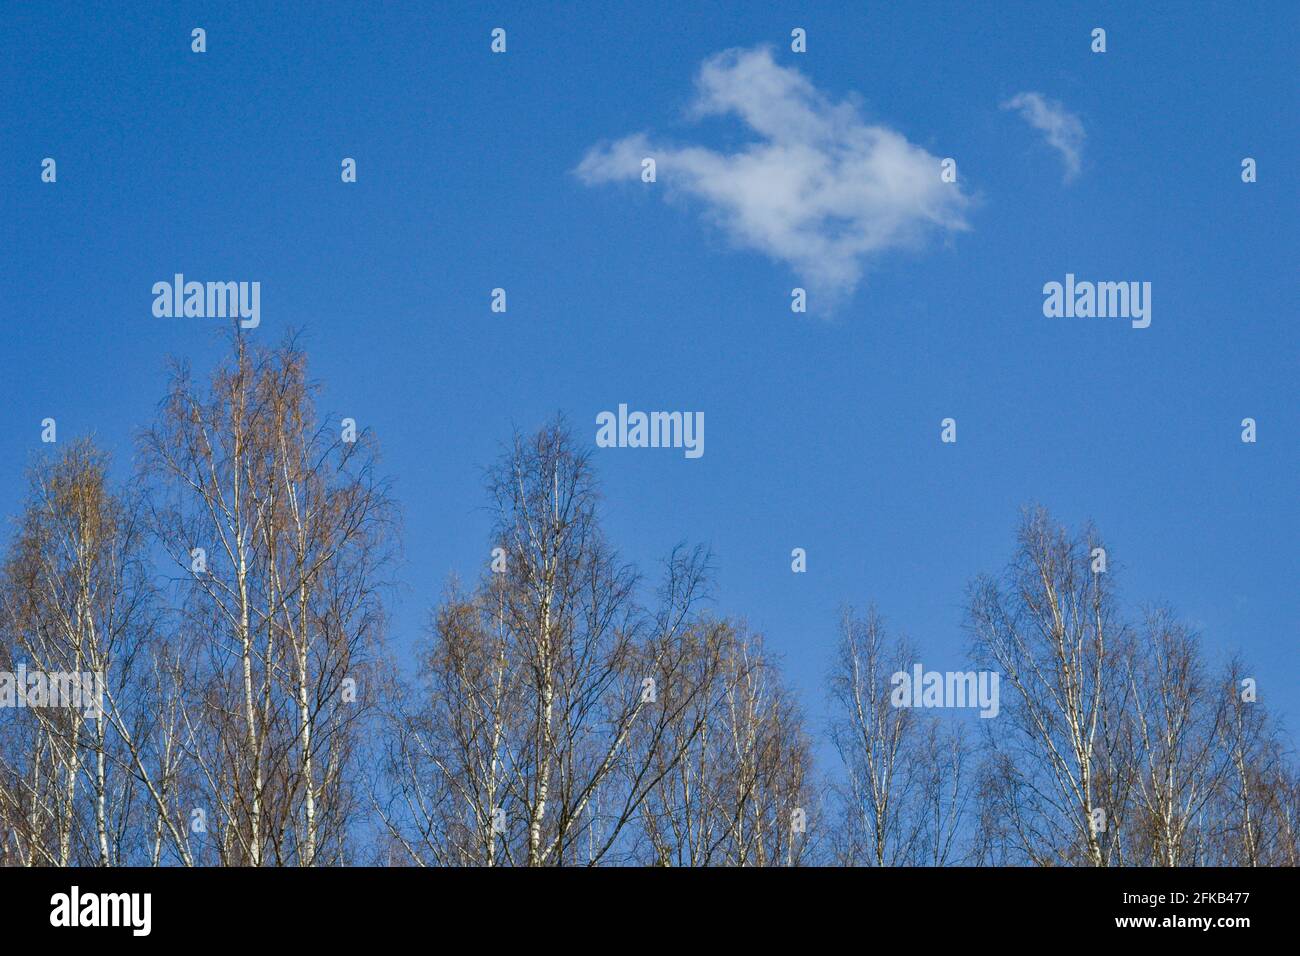 Cielo blu con una nuvola bianca sopra gli alberi di betulla. Fotografia estiva Foto Stock